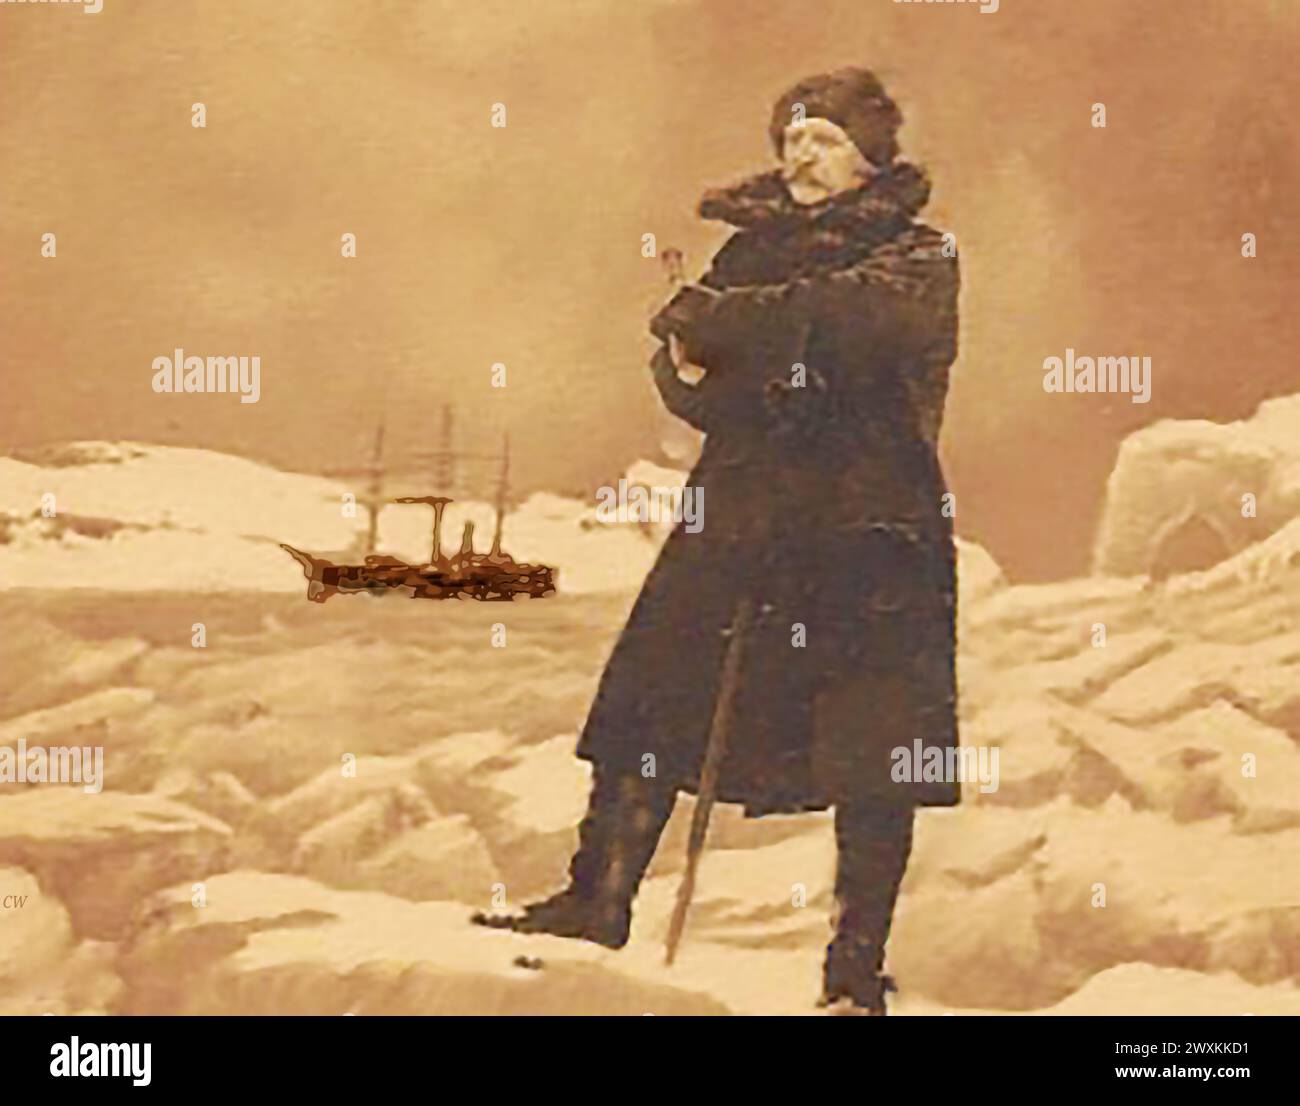 Portrait de Robert Peary Polar Explore. Robert Edwin Peary Sr. (/ 1856 – 1920) il était un explorateur américain et officier de la marine des États-Unis, célèbre avant plusieurs expéditions dans l'Arctique à la fin du XIXe et au début du XXe siècle. Il prétendait être la première personne à avoir atteint le pôle Nord géographique. Il était un n 1896, Peary, un maître maçon, recevant ses diplômes dans le No. 454, New York City Kane Lodge. Le s Roosevelt vu en arrière-plan a été conçu et construit spécifiquement pour ses expéditions d'exploration polaire. i Banque D'Images